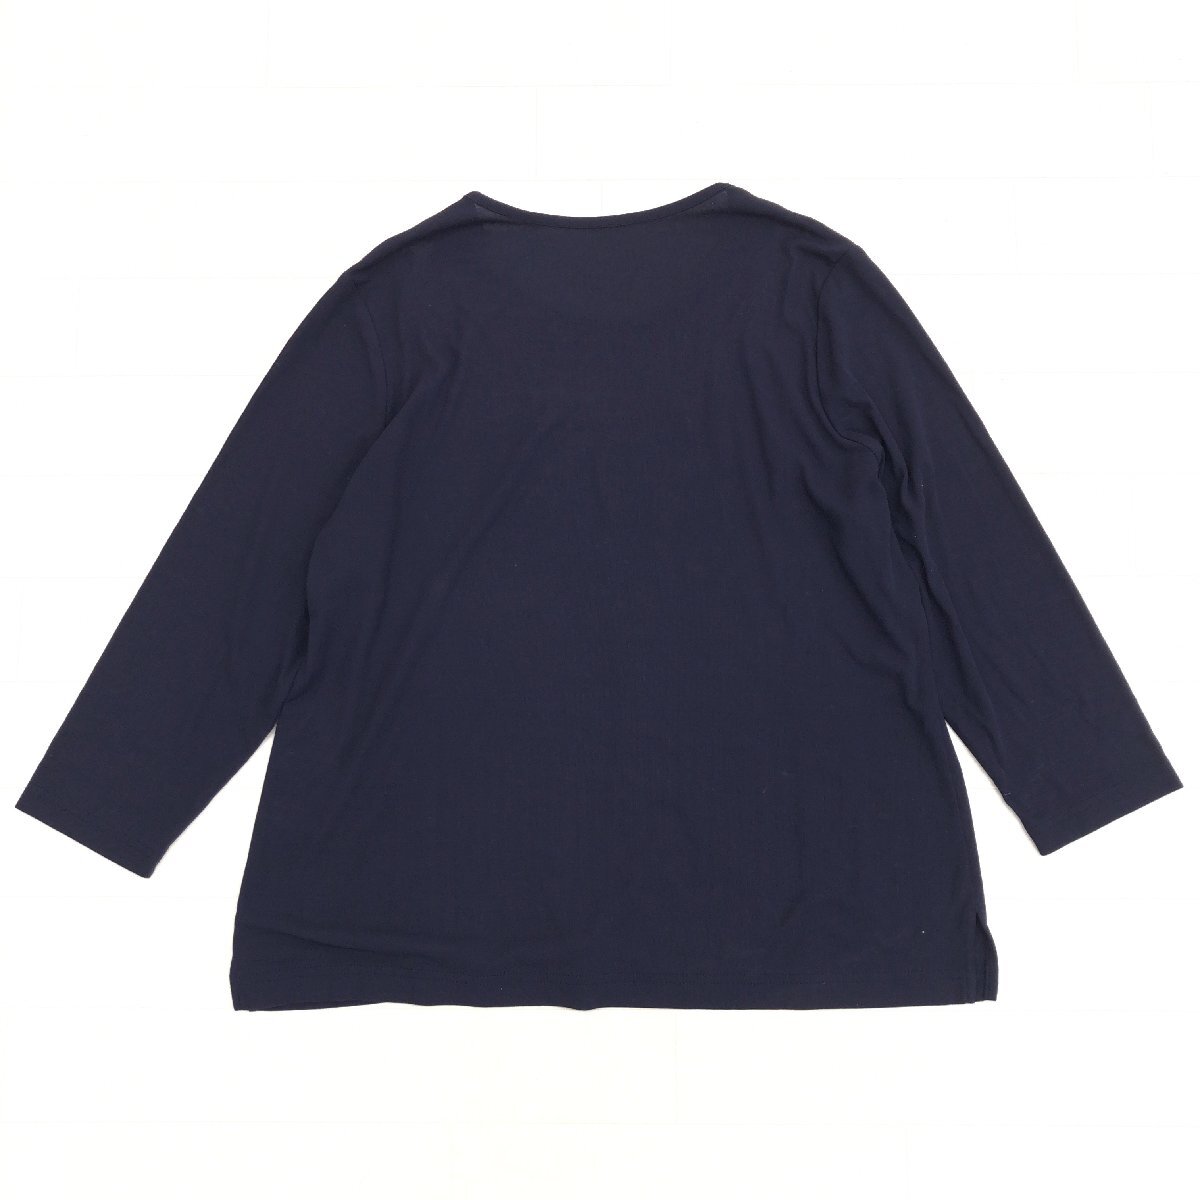 美品 Chamois シャミー コットン100% ビジュー装飾 カットソー 44(2XL) ネイビー系 日本製 ロンT Tシャツ 3L ゆったり 大きい ジオン商事の画像2